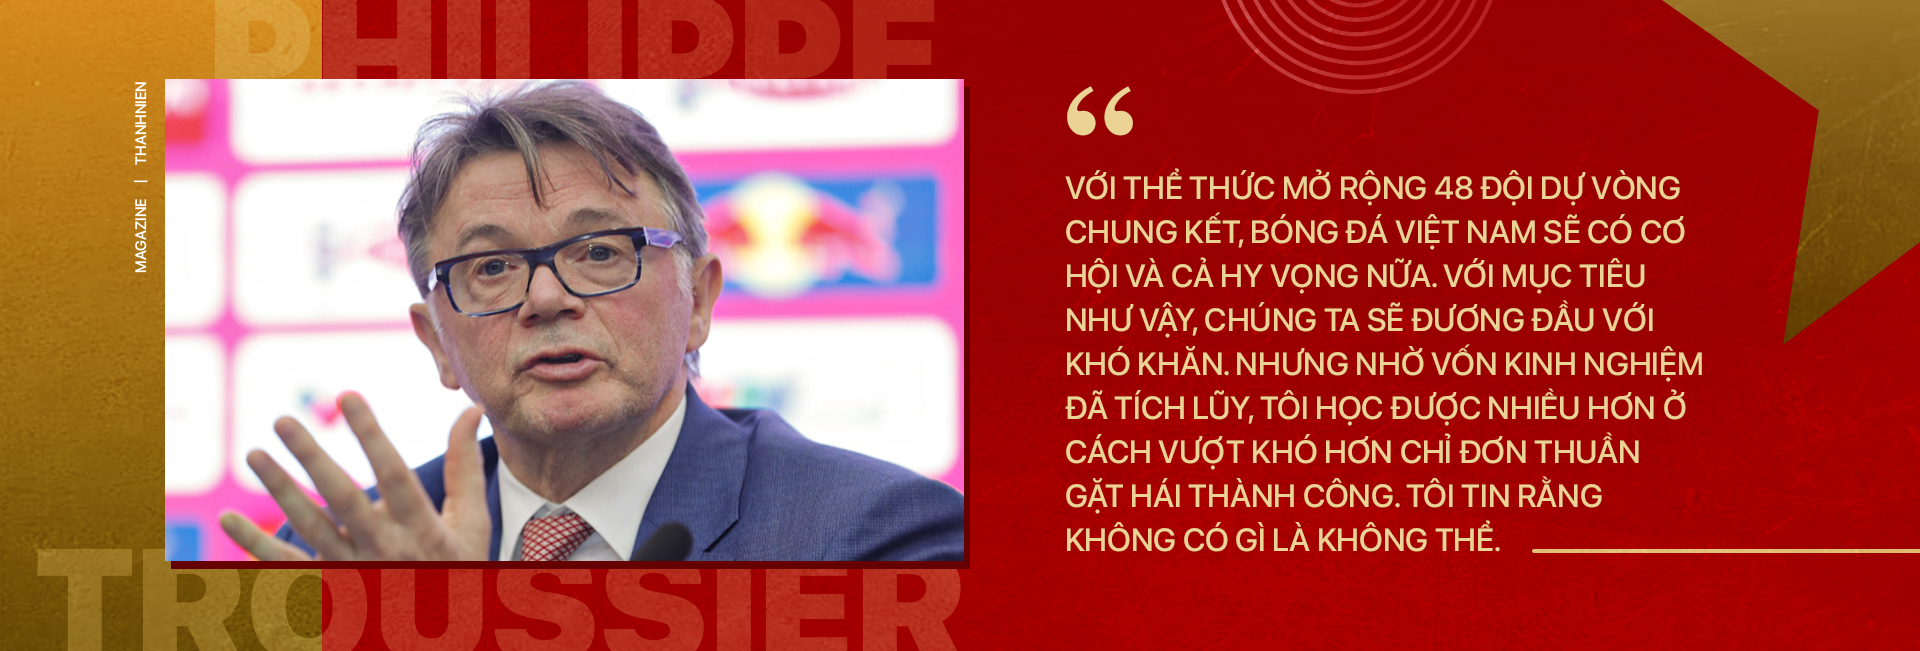 Bóng đá Việt Nam và kỷ nguyên hứa hẹn mang tên Philippe Troussier  - Ảnh 7.